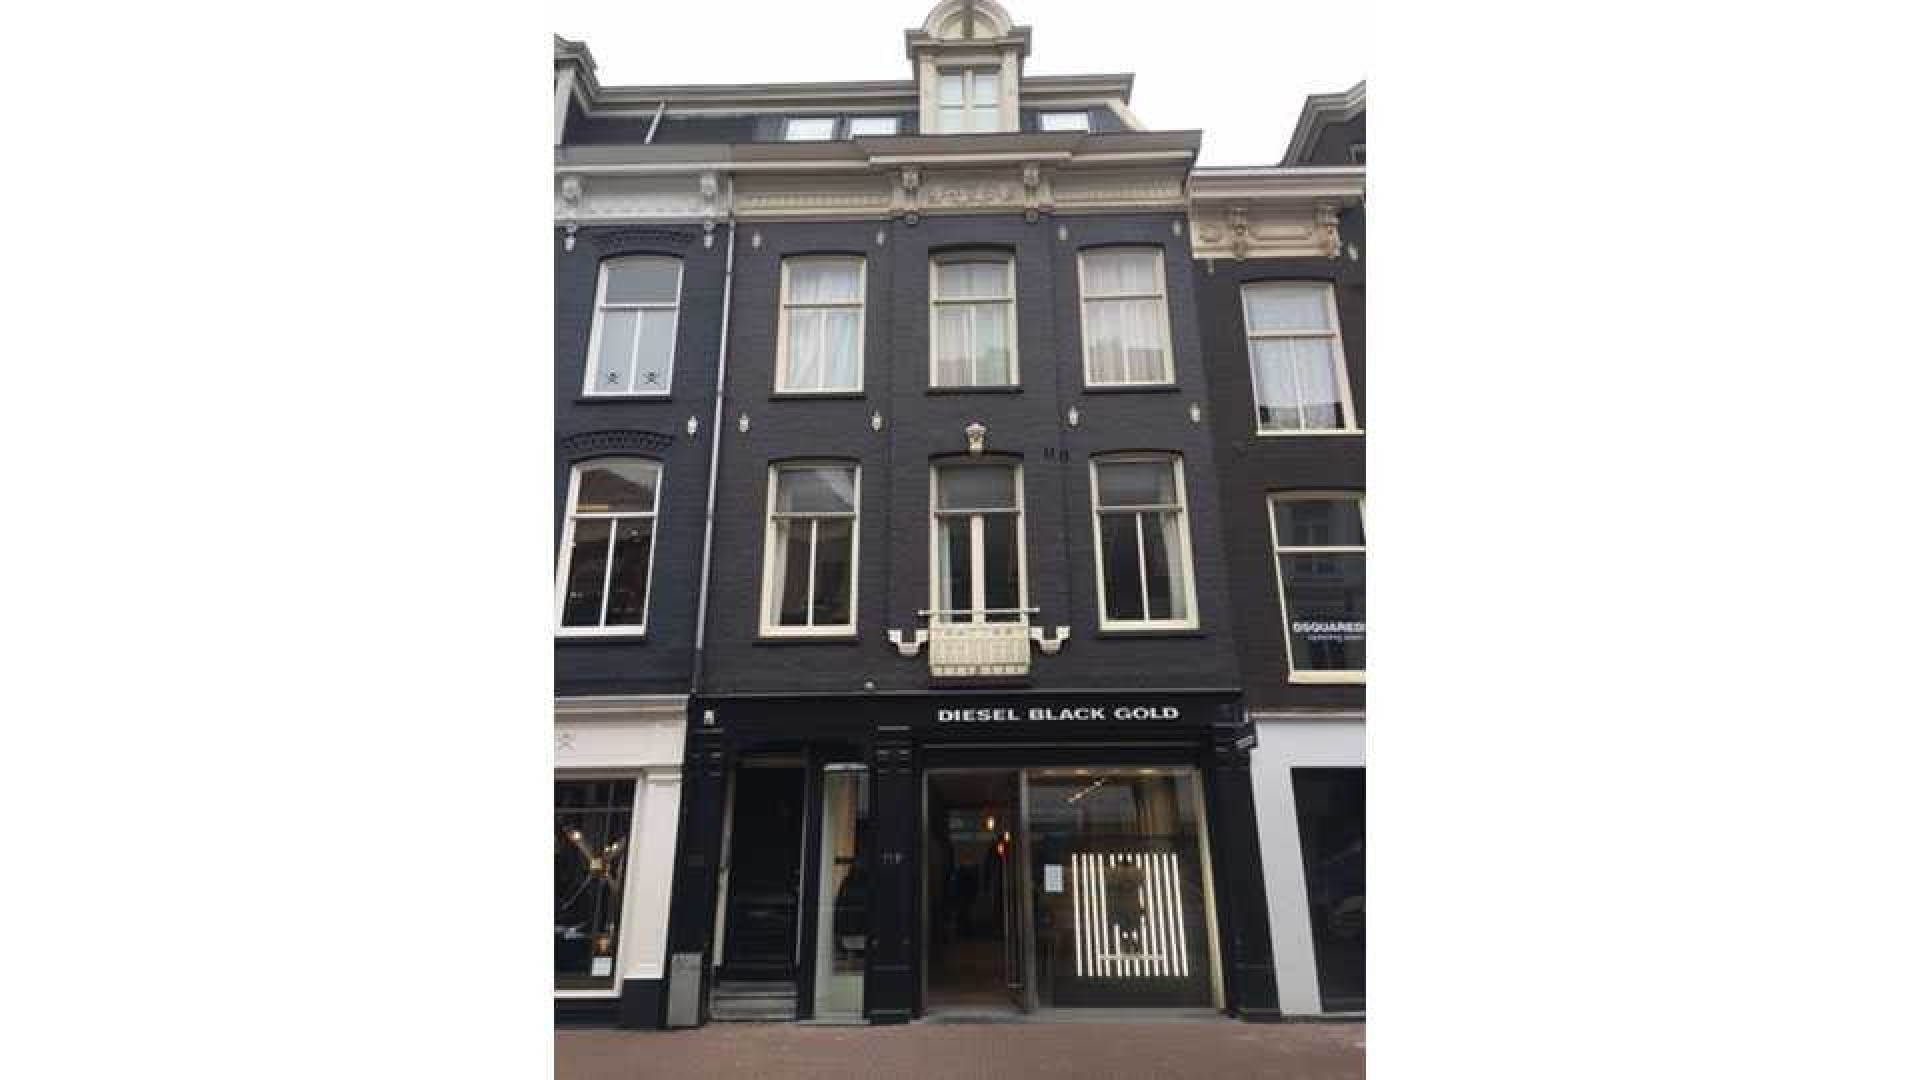 Dit is het nieuwe huurappartement van Gordon in de Amsterdamse PC Hooftstraat. Zie foto's 1